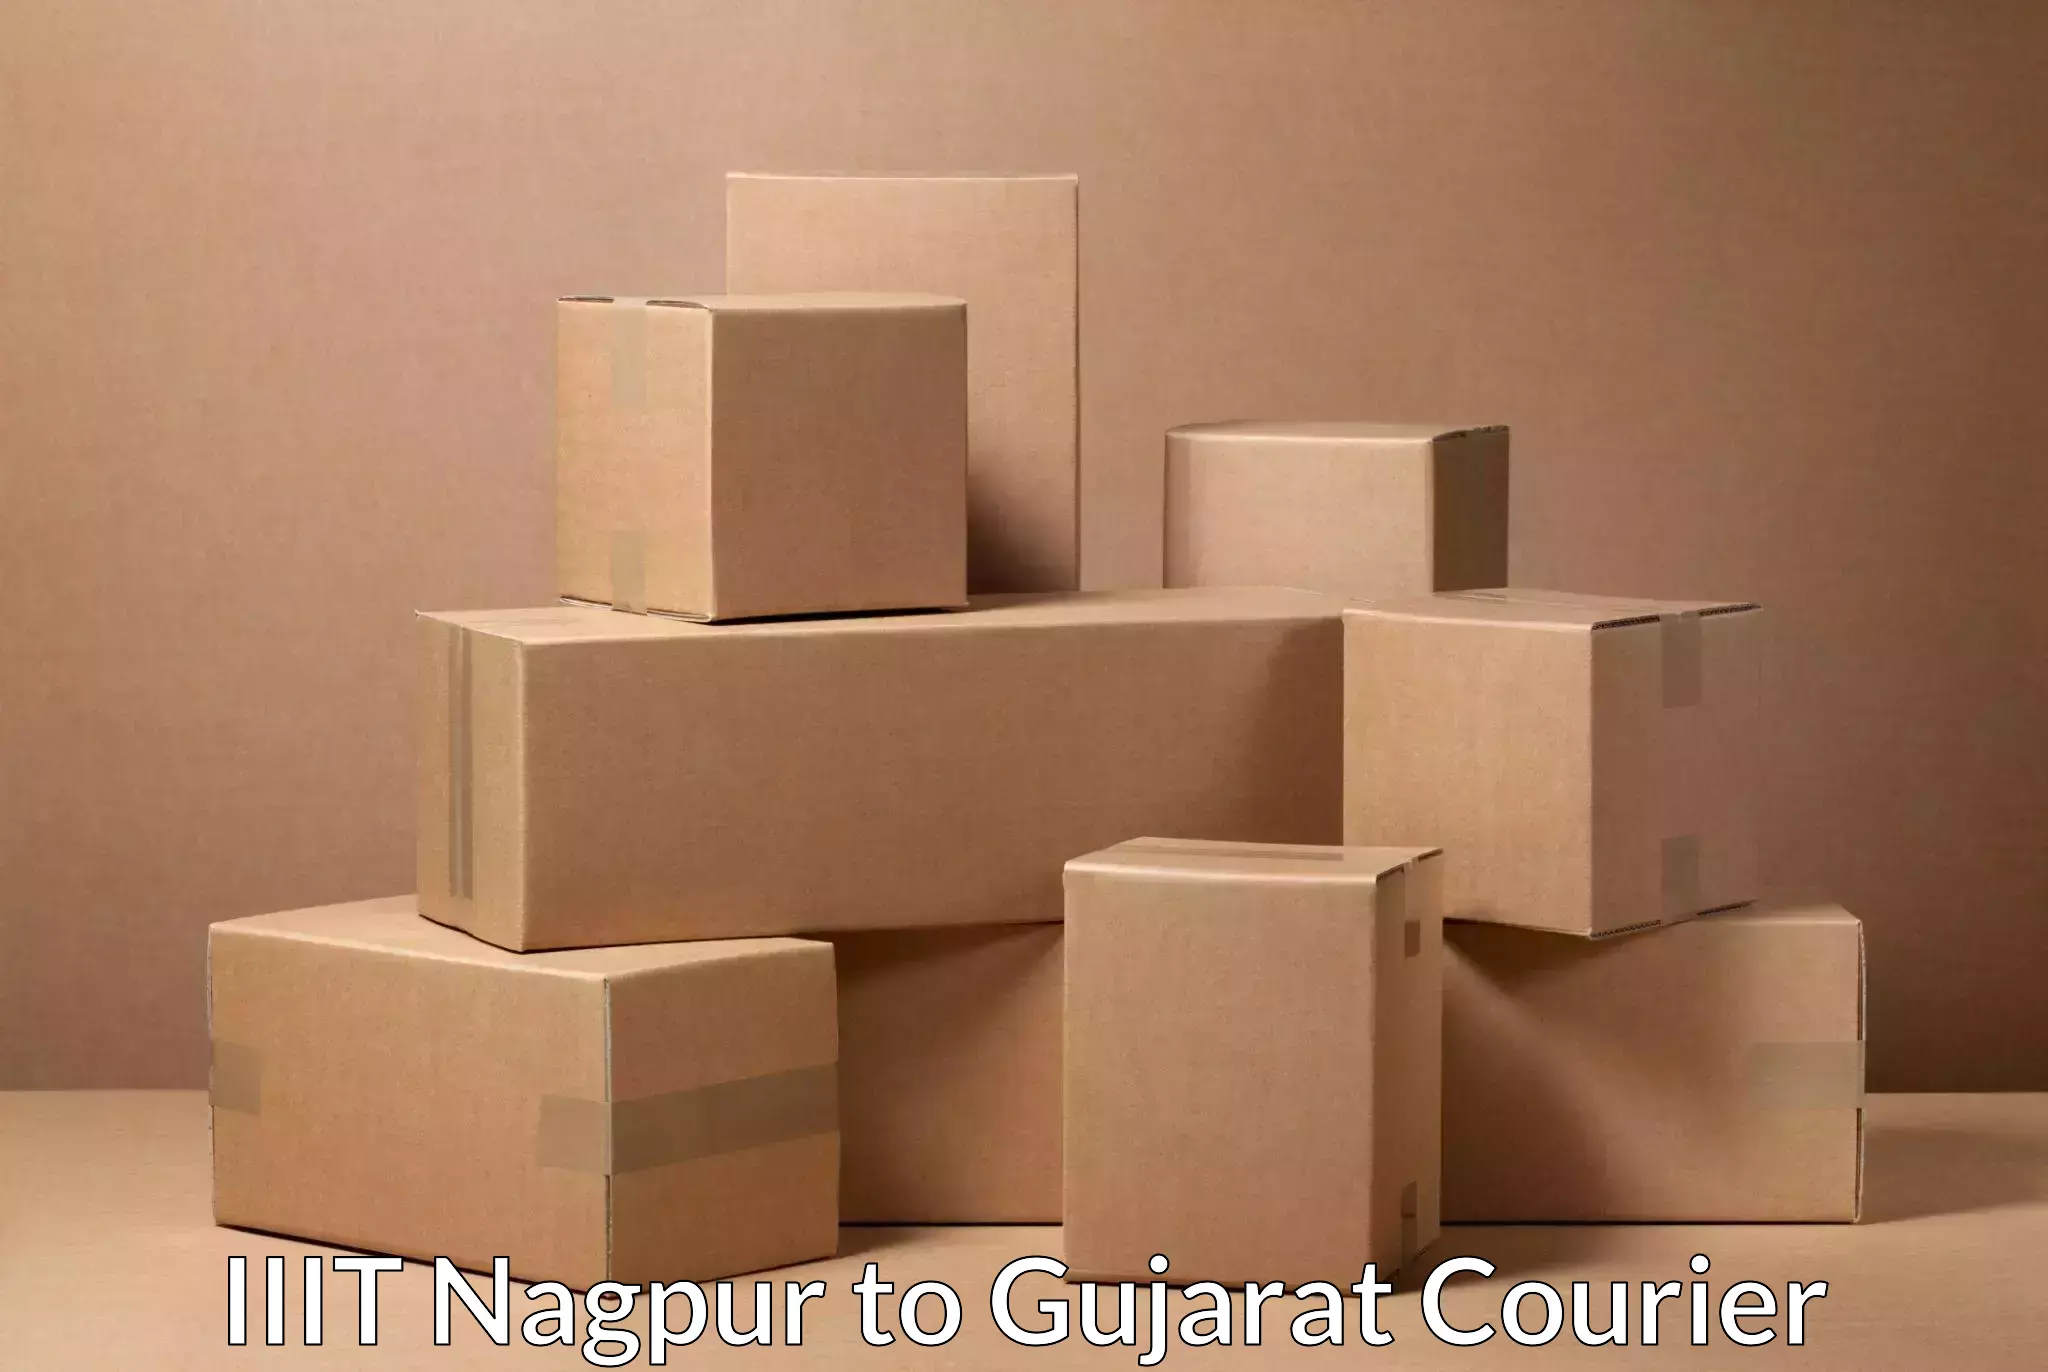 Courier app IIIT Nagpur to Deesa